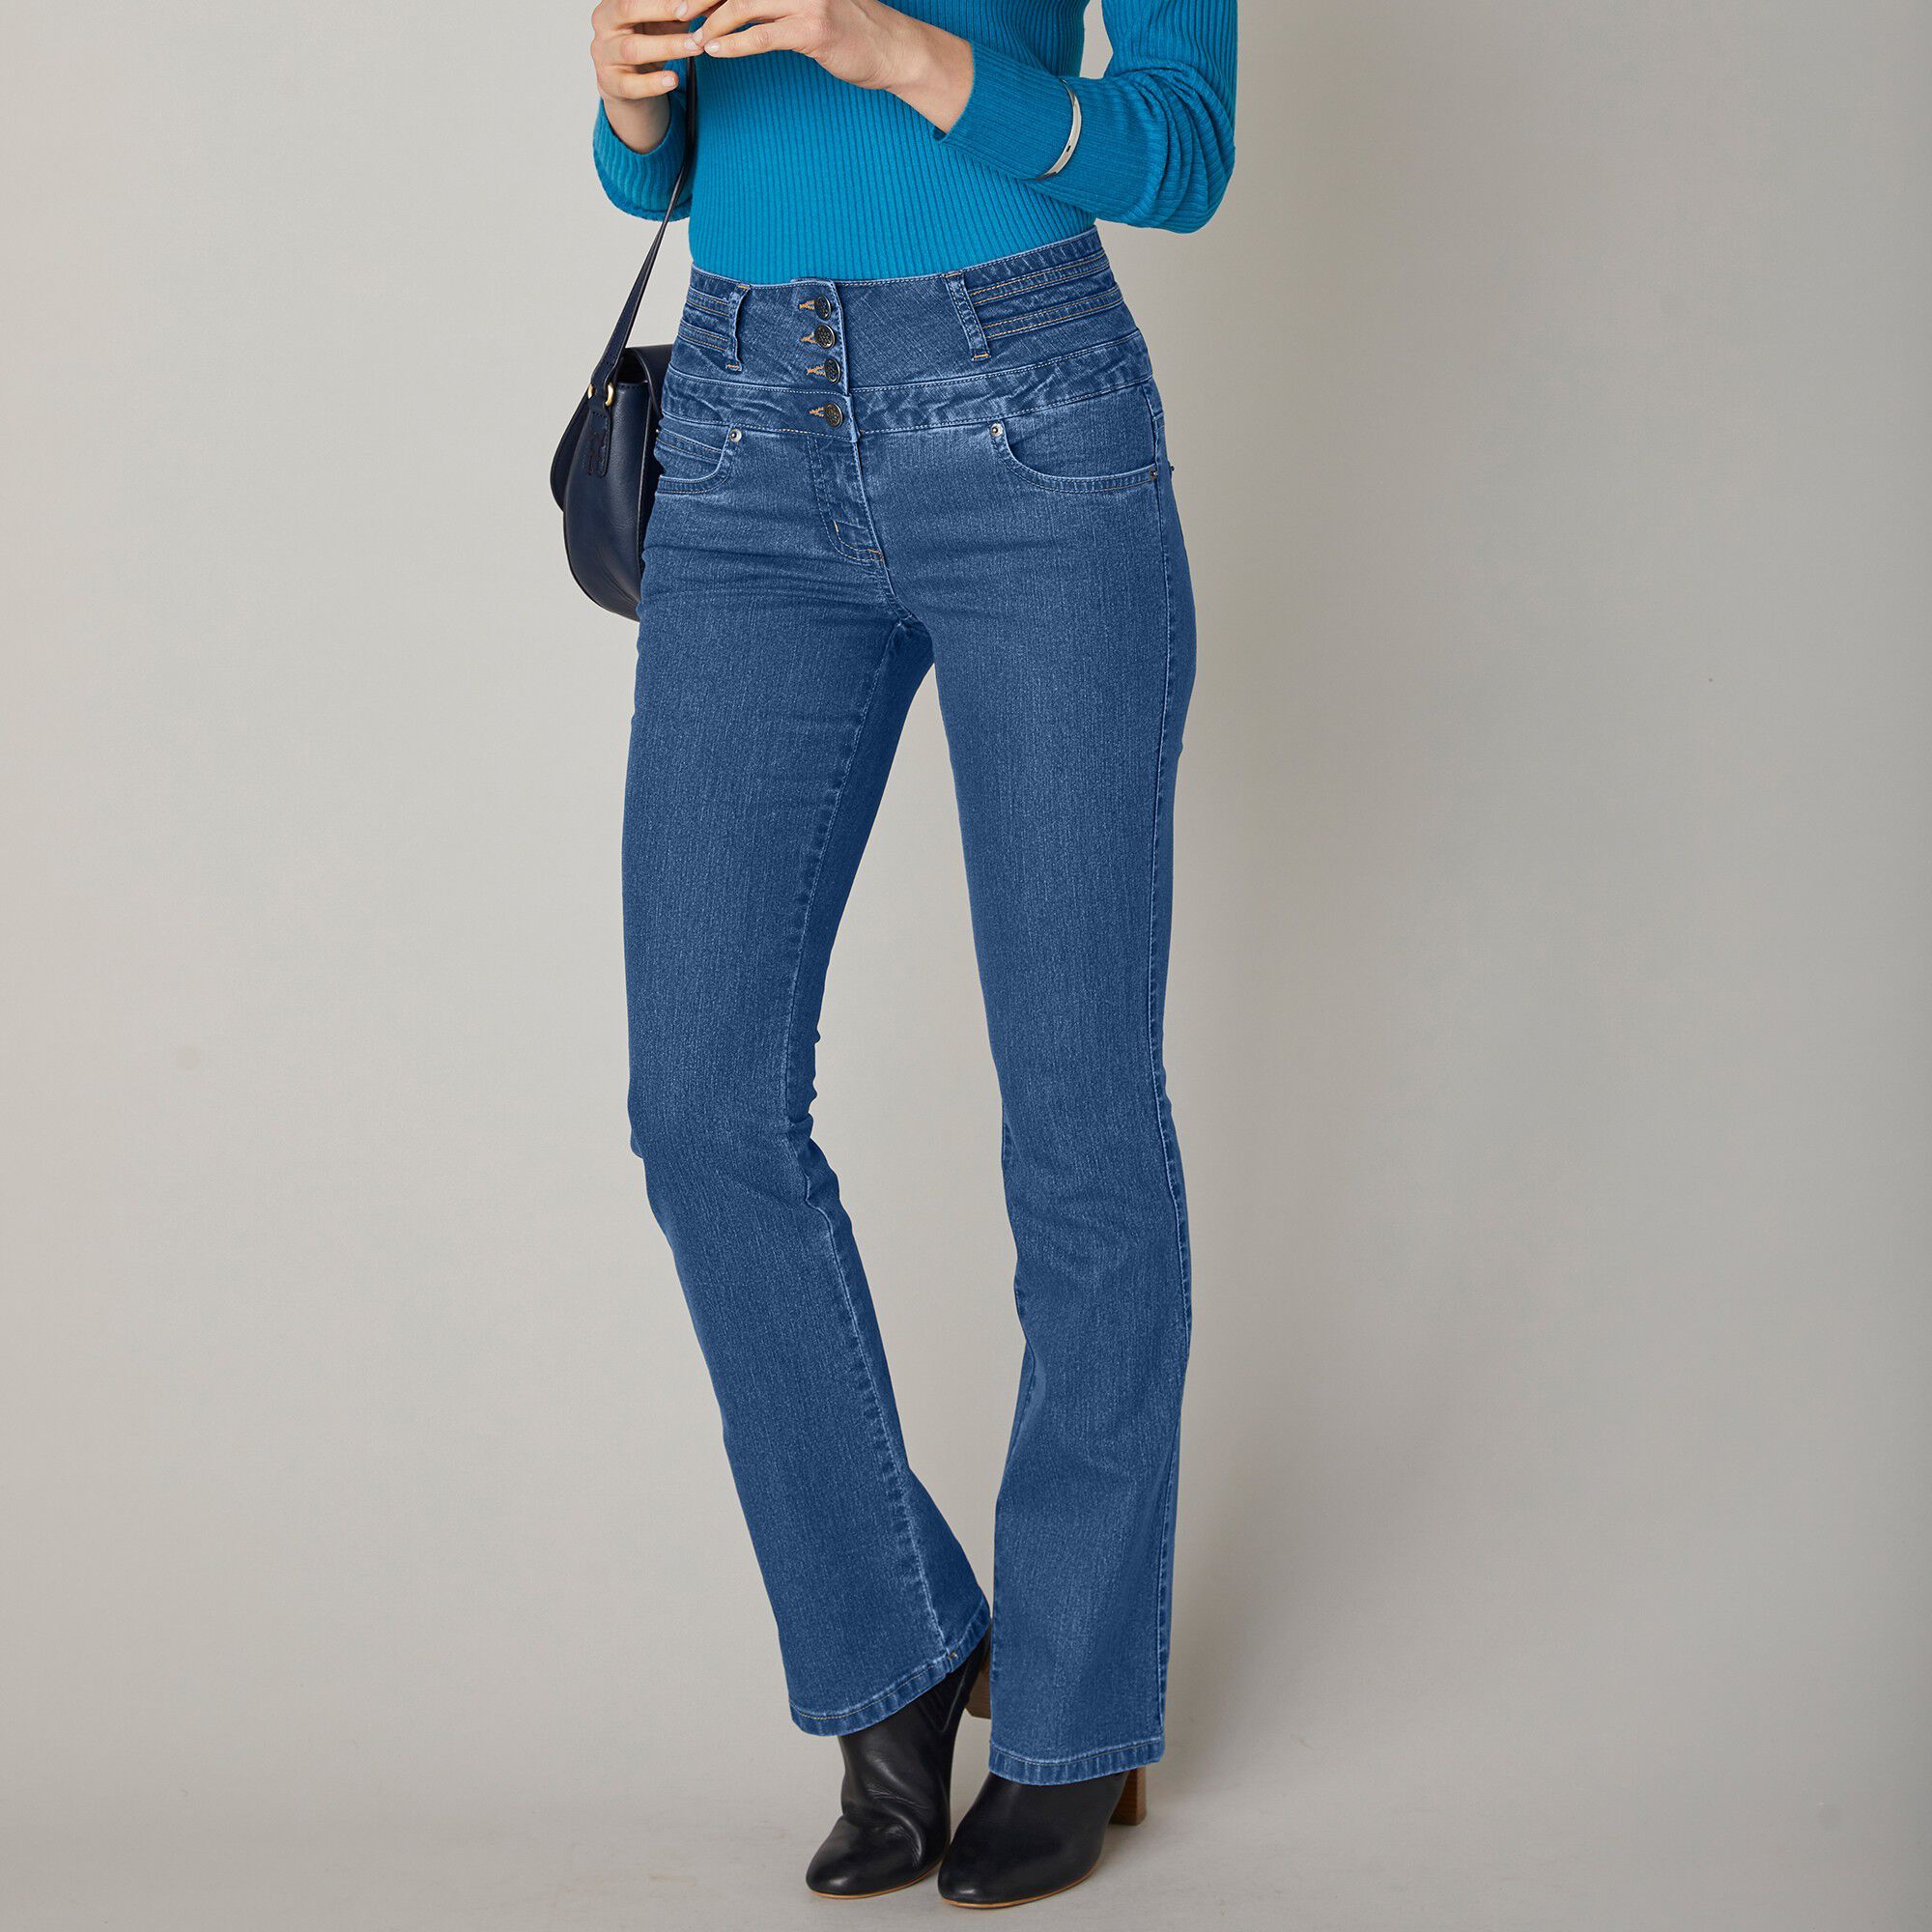 78 Cm Blacheporte Femme Vêtements Pantalons & Jeans Jeans Bootcut jeans Jean Taille Haute Coupe Bootcut Entrej 